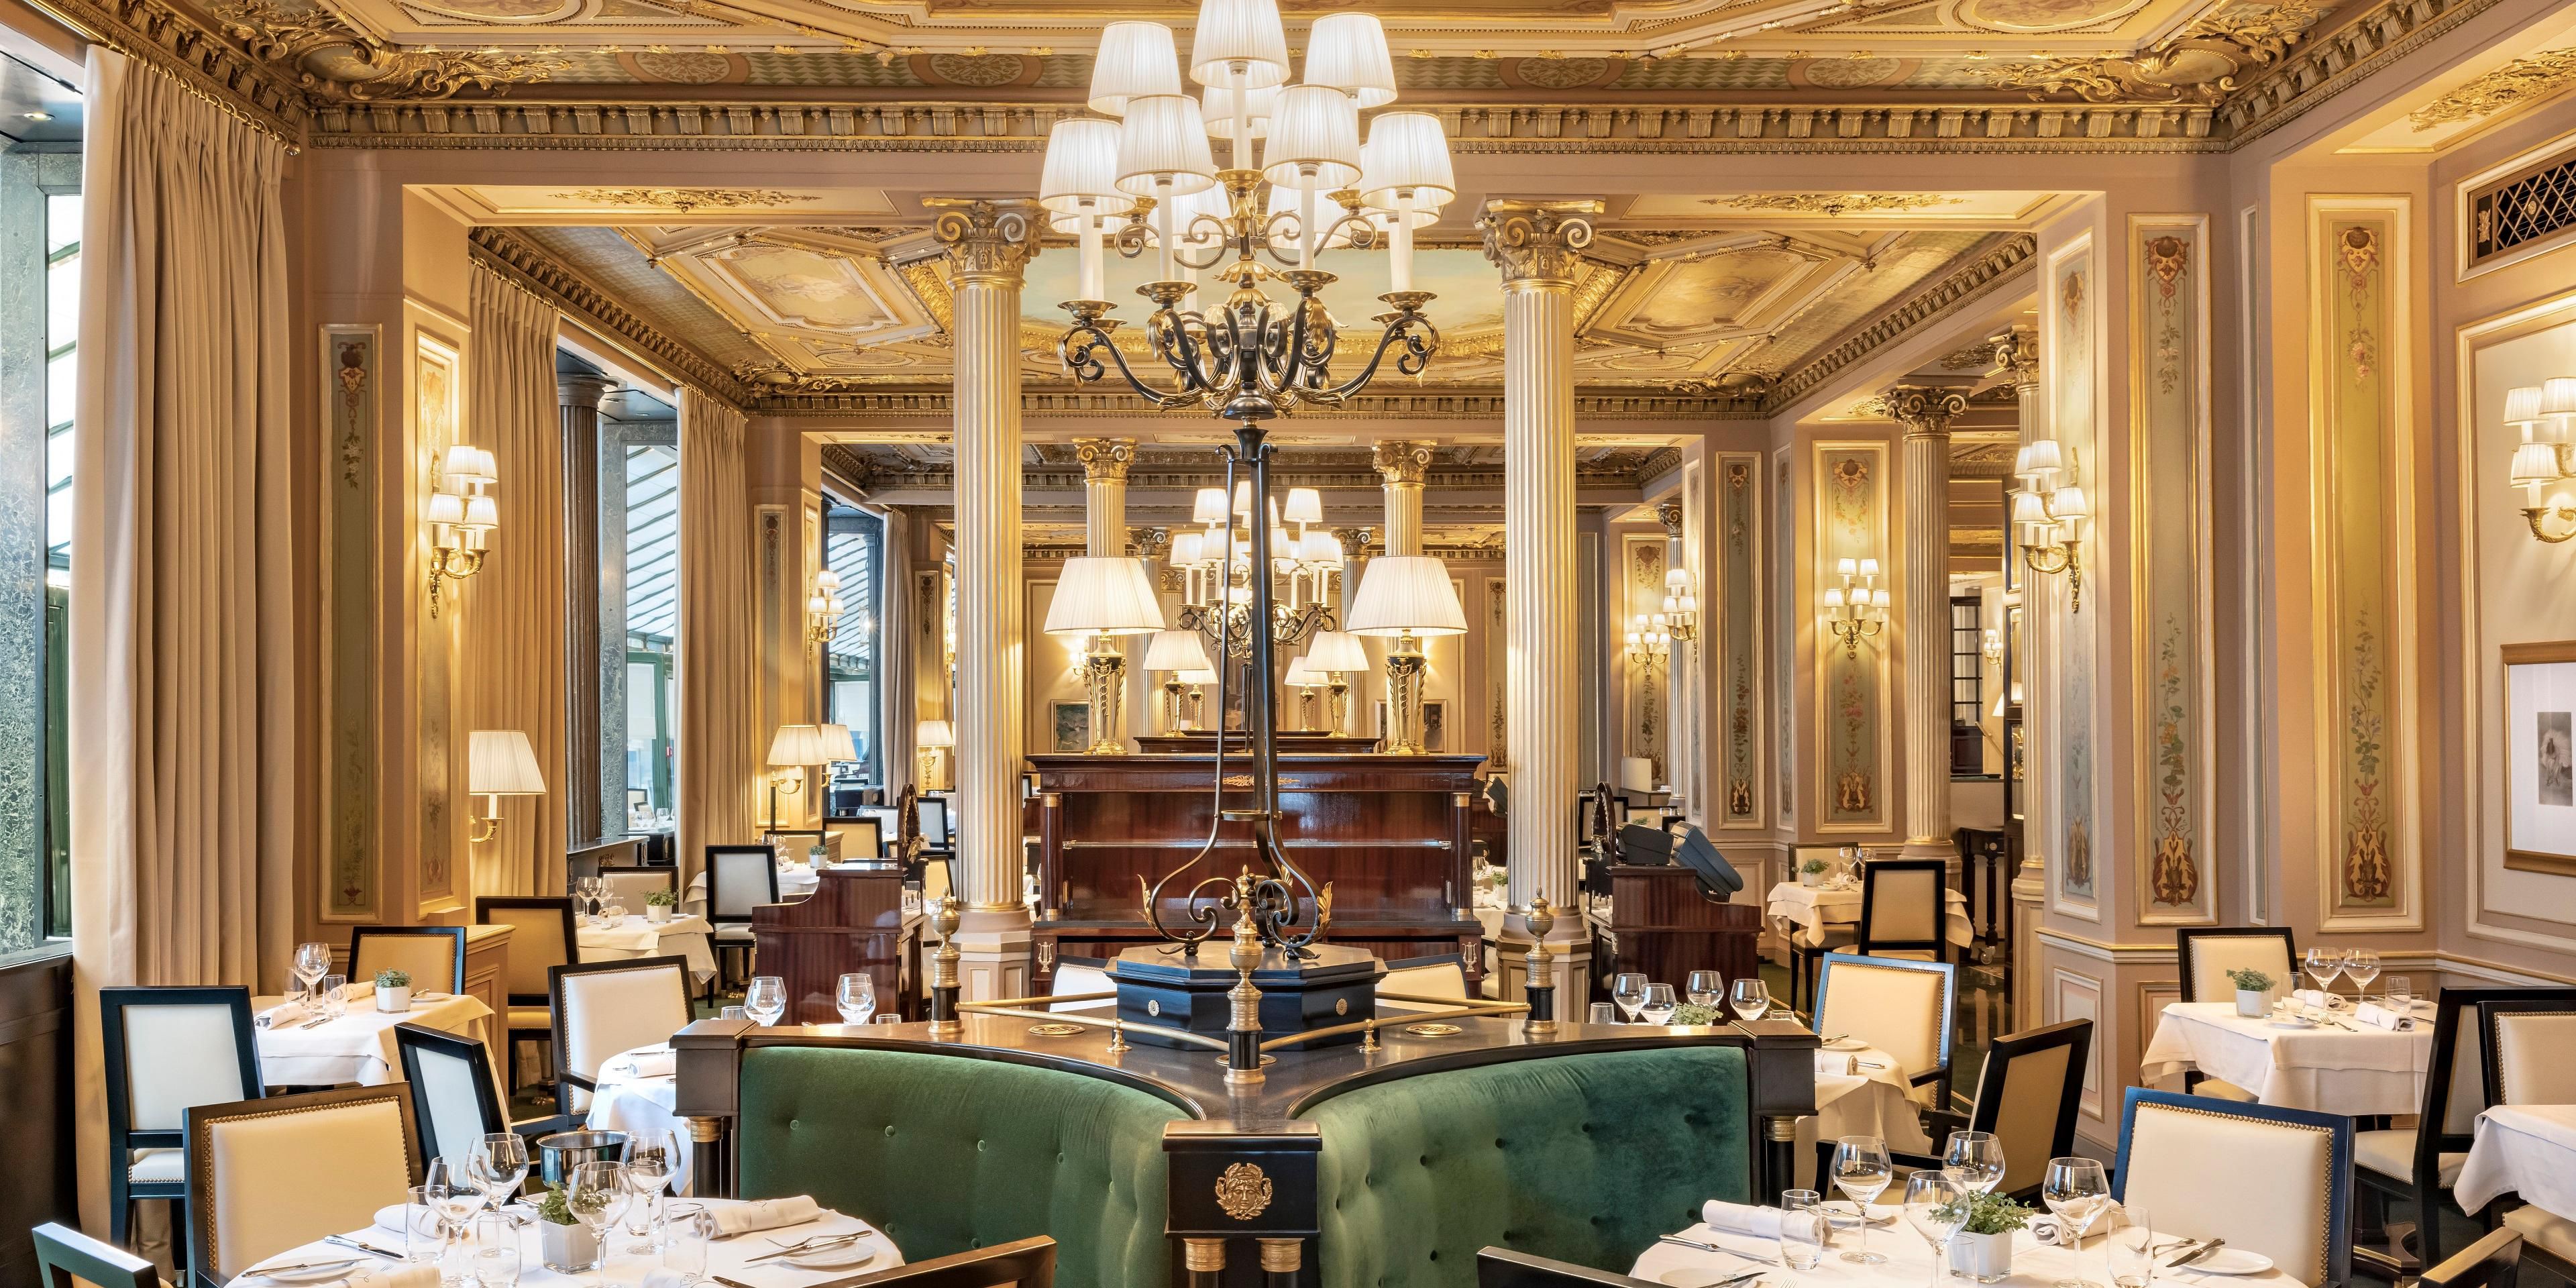 Descubra o cenário histórico do Café de la Paix, uma lenda da vida parisiense desde 1862.
O Chef Laurent André oferece os clássicos da gastronomia francesa para momentos excepcionais diante da Ópera Garnier.